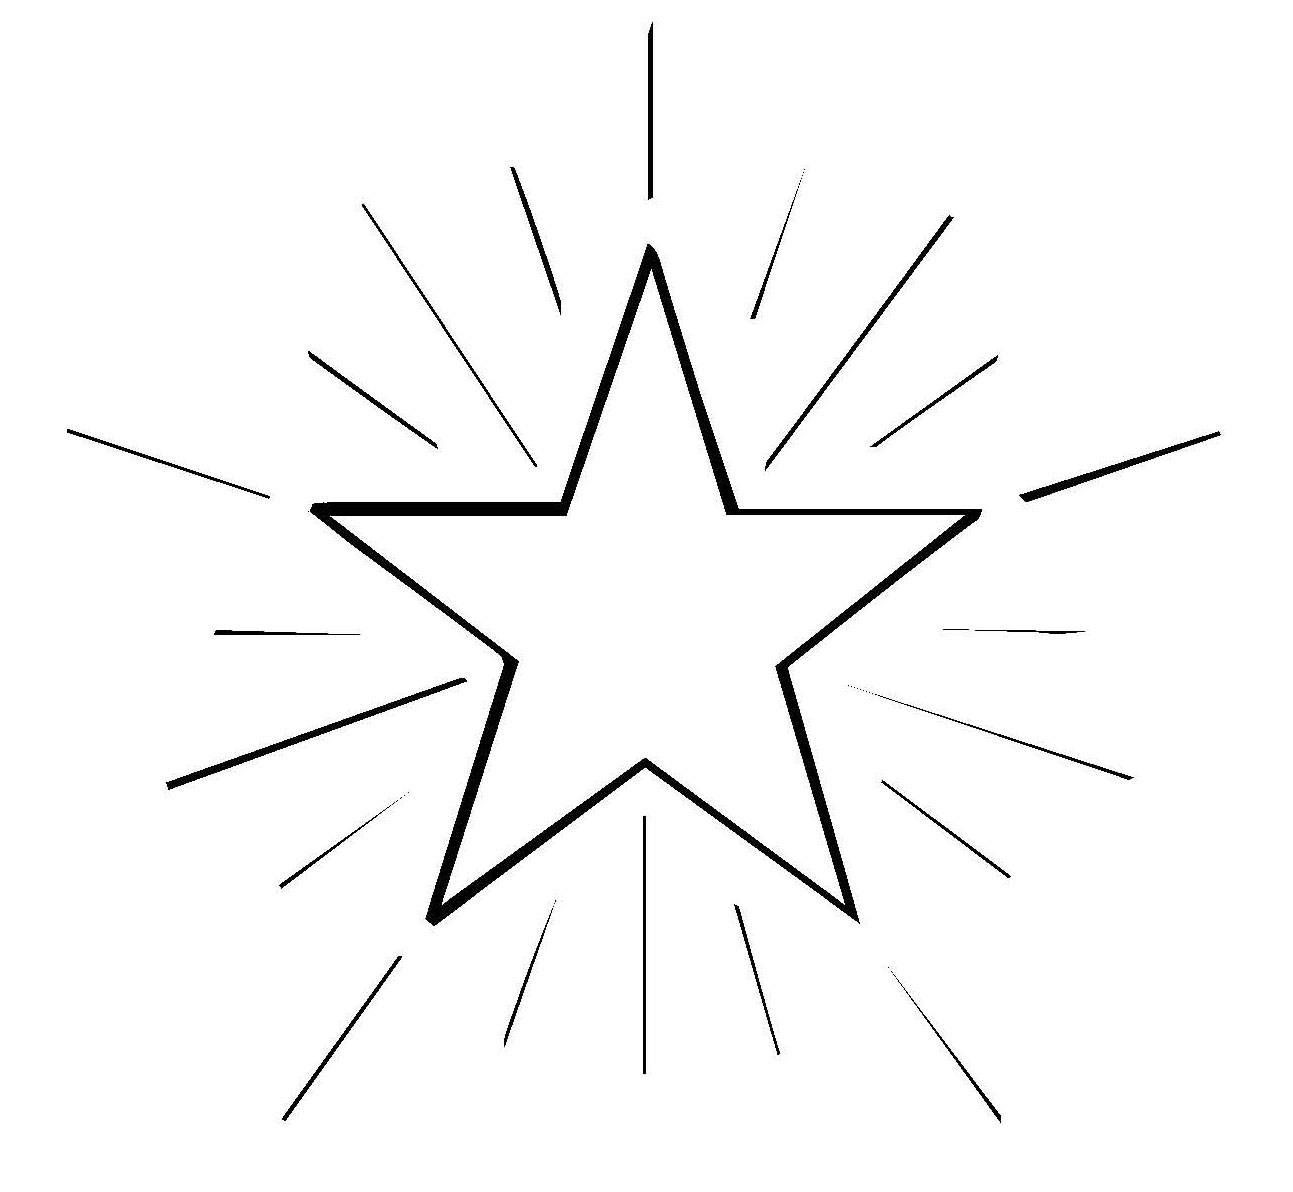 Malvorlagen Stern Kostenlos
 Stern Ausmalbilder 01 ausmalbilder